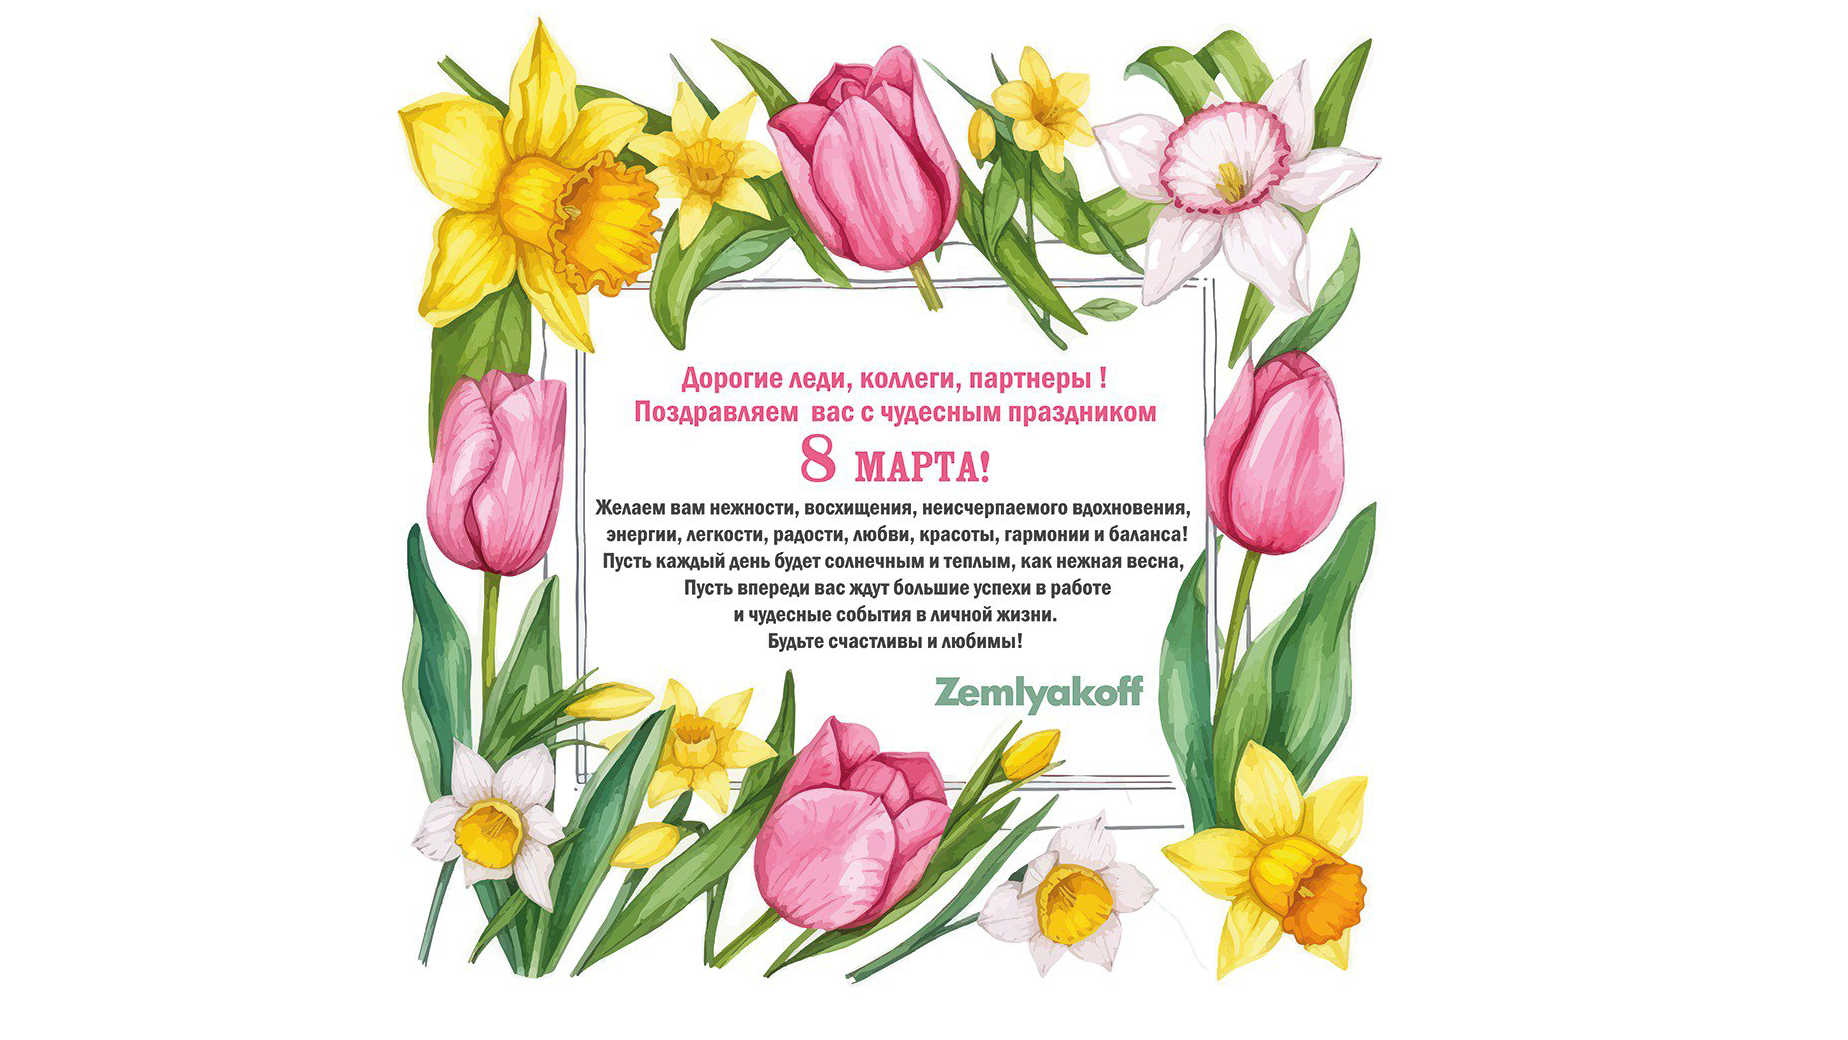 Компания “ЗемлякоФФ” поздравляет женщин с 8 Марта!